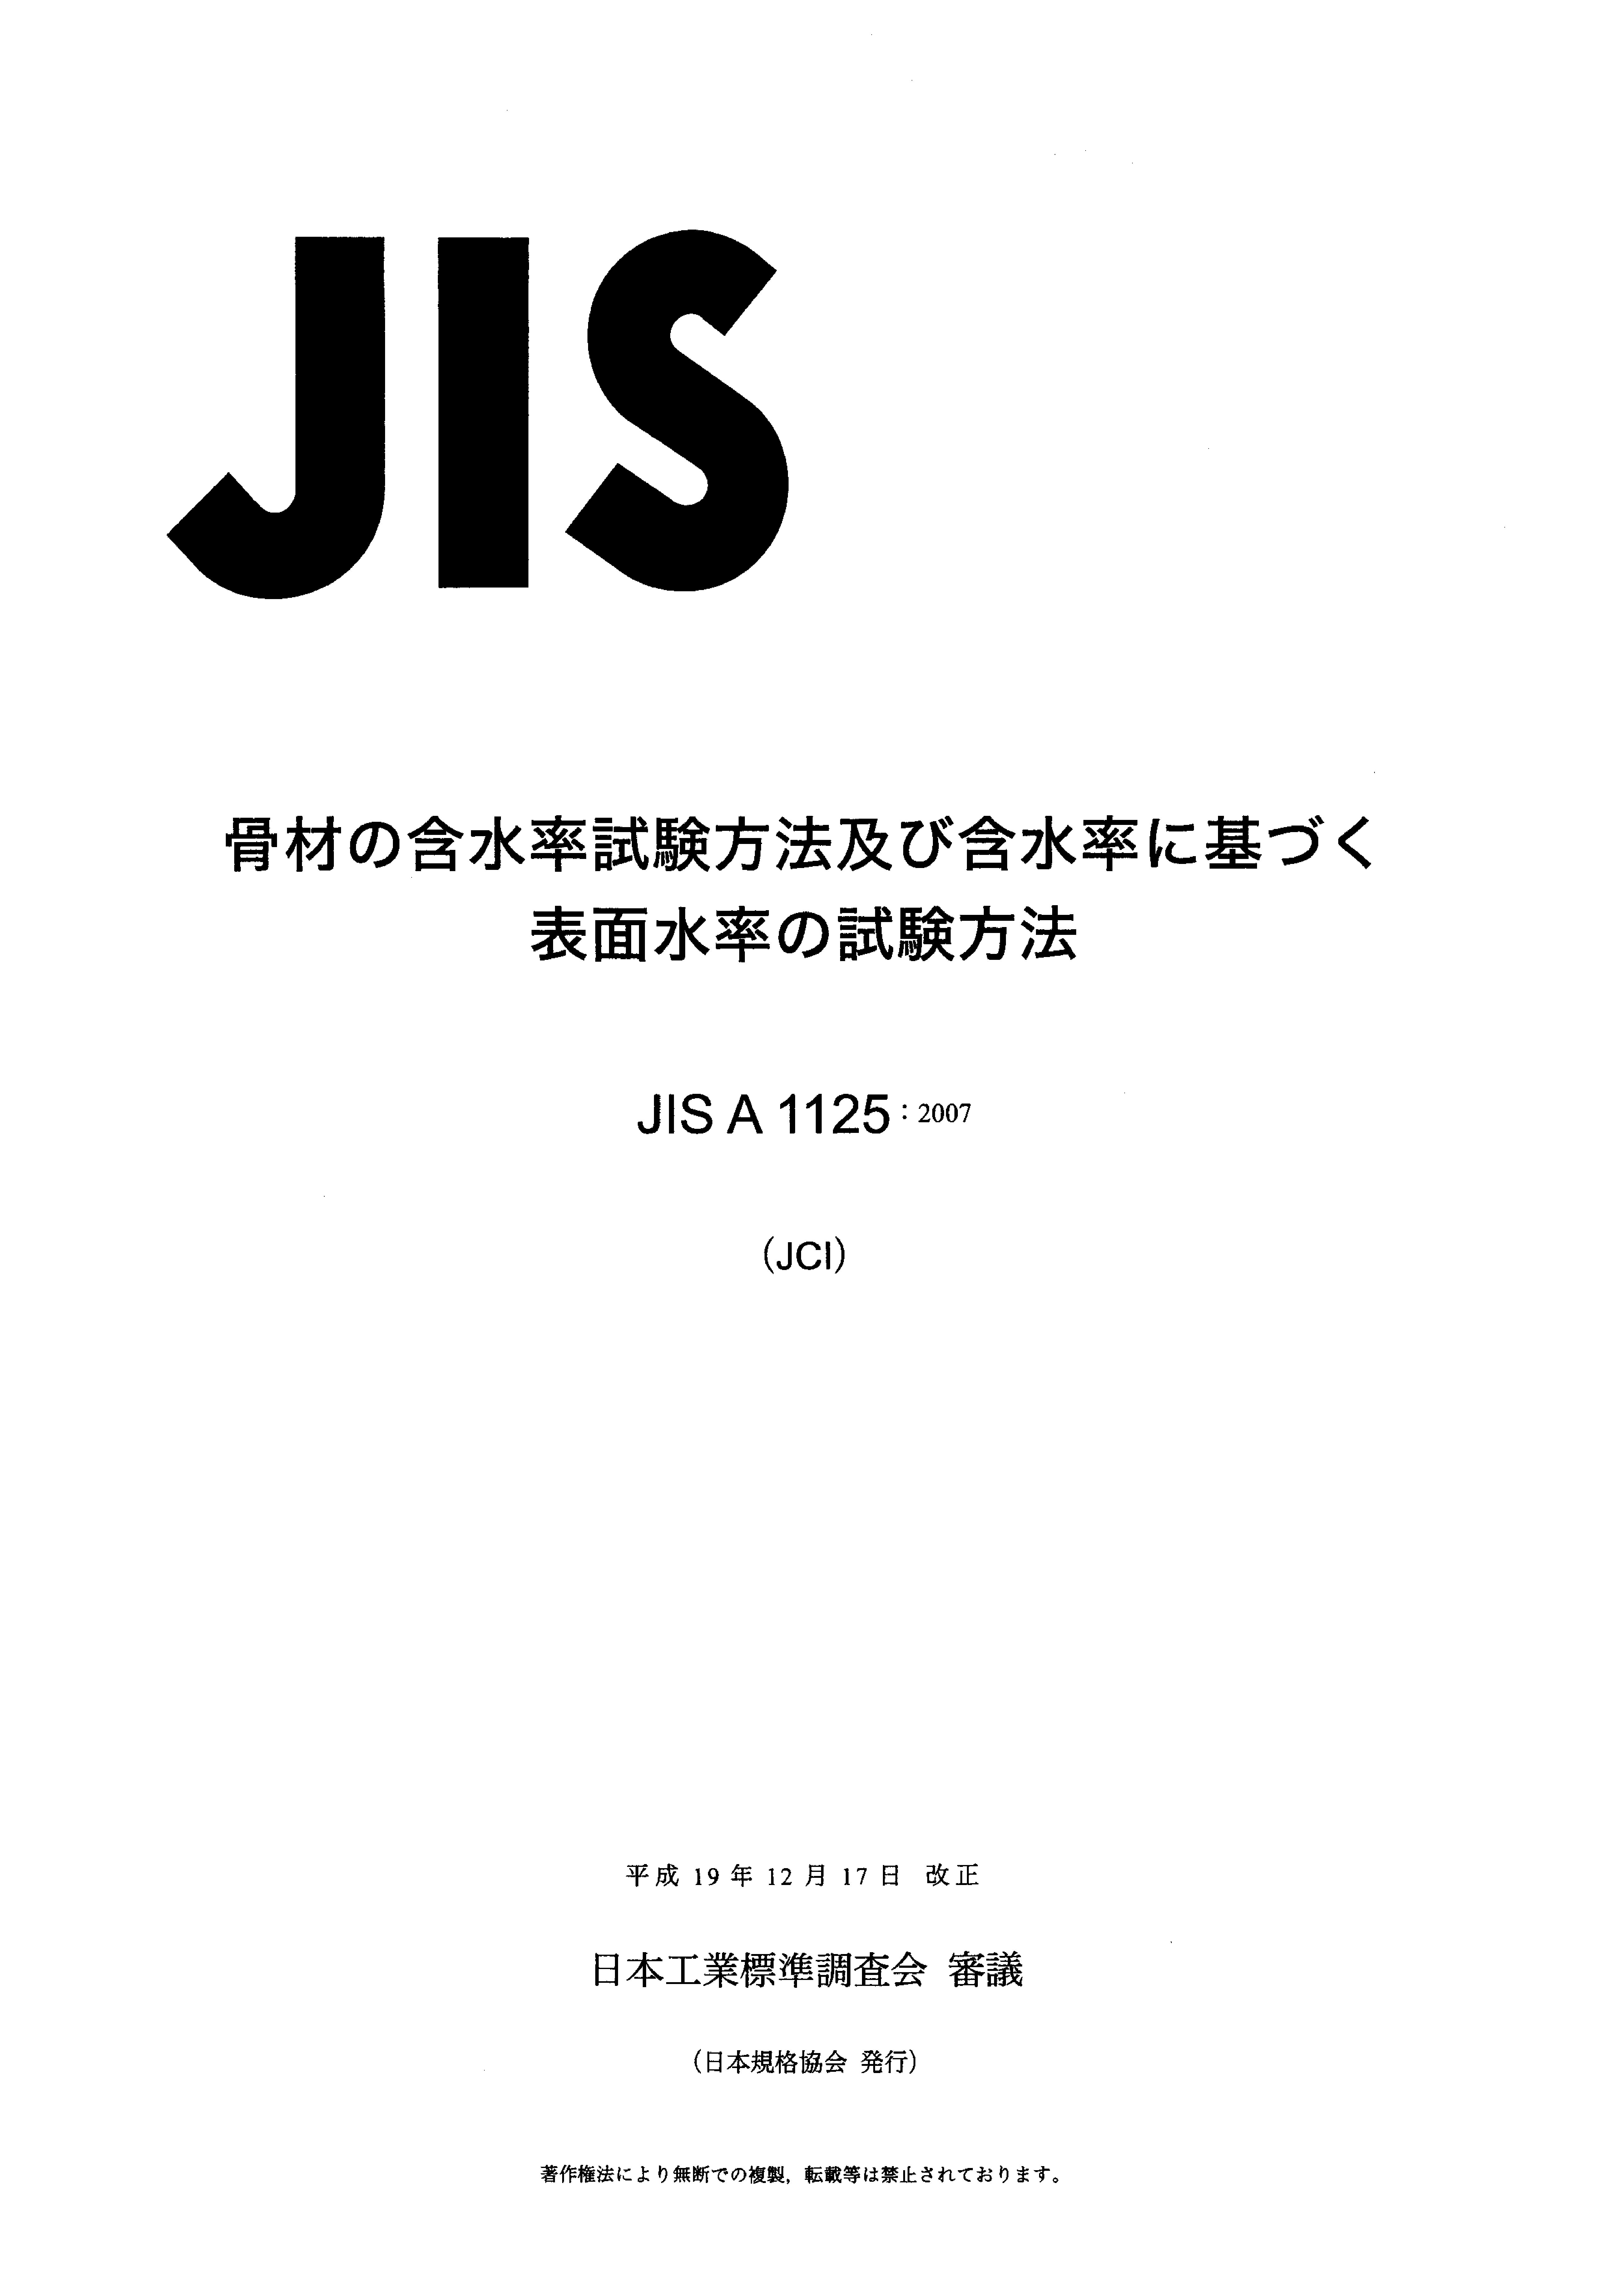 JIS A 1125:2007封面图